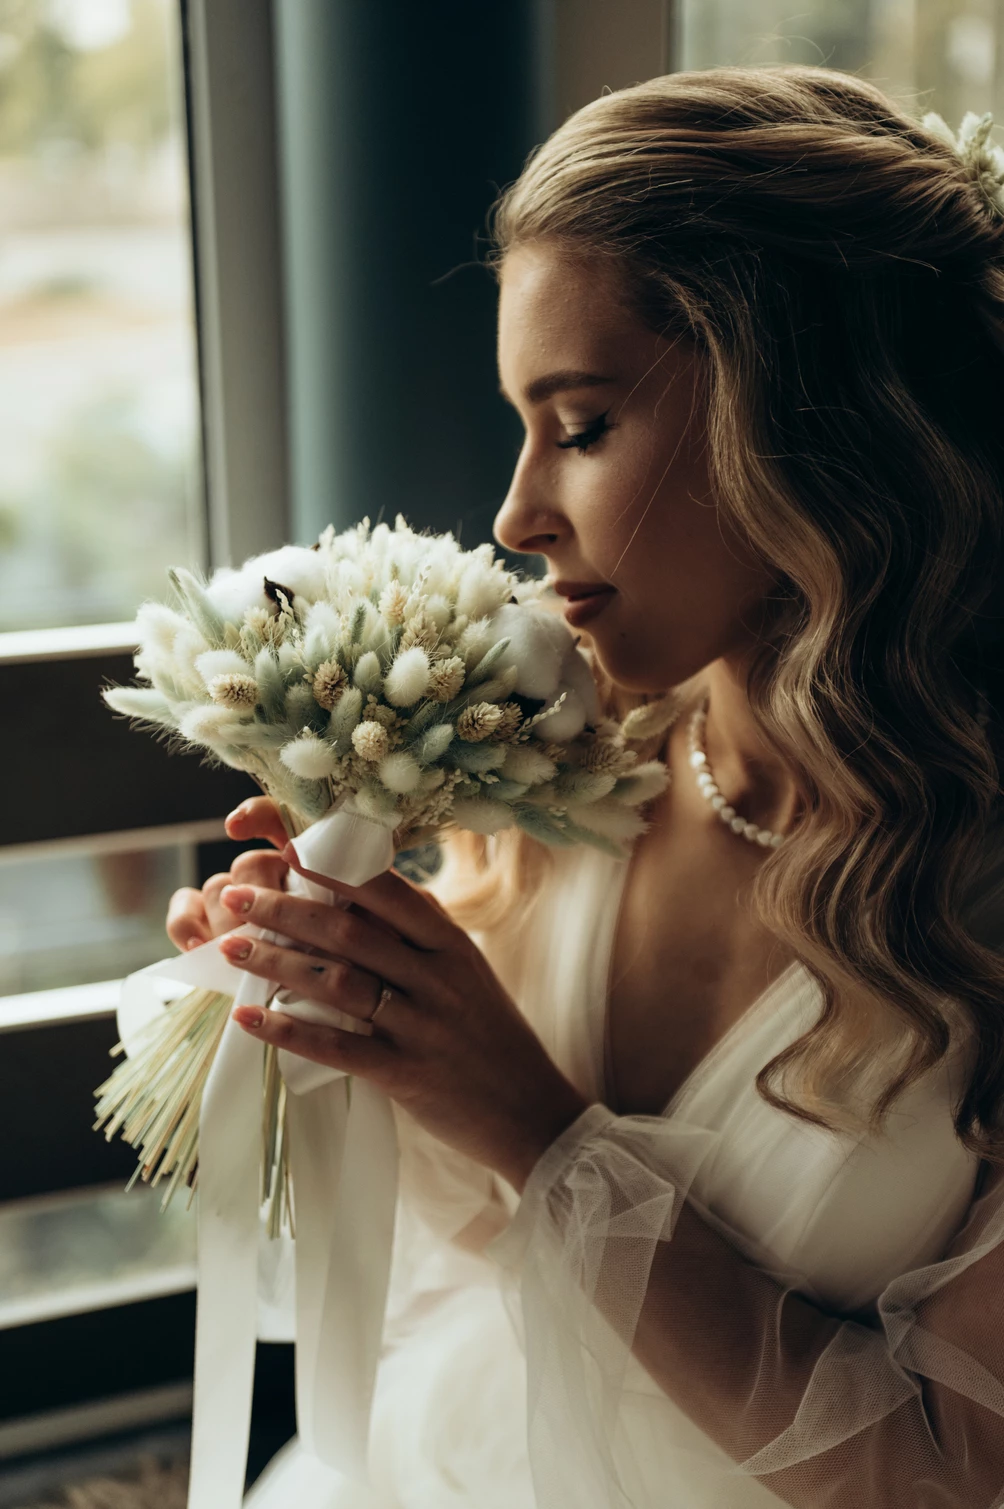 Елегантна наречена з весільним букетом у м'якому світлі, створюючи неповторний образ романтичного весільного дня.